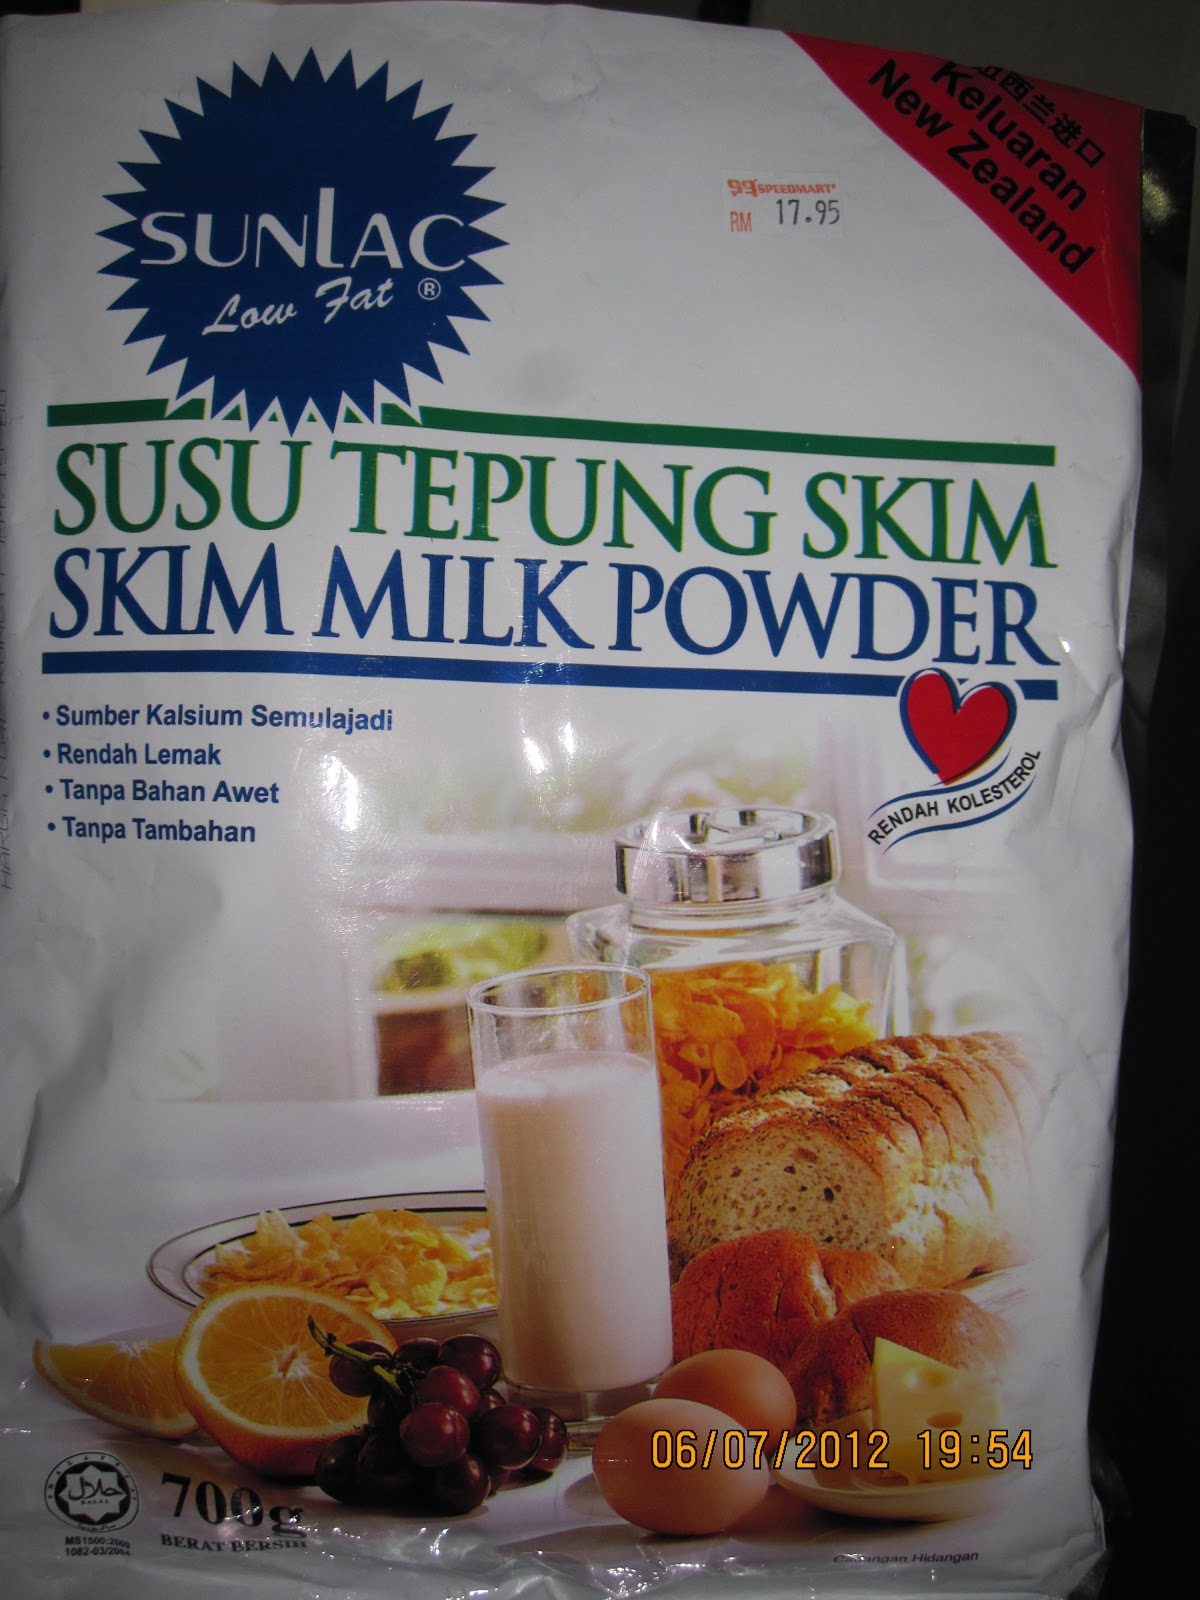 Kenapa saya suka susu skim  Sunlac Min Aina Ila Aina